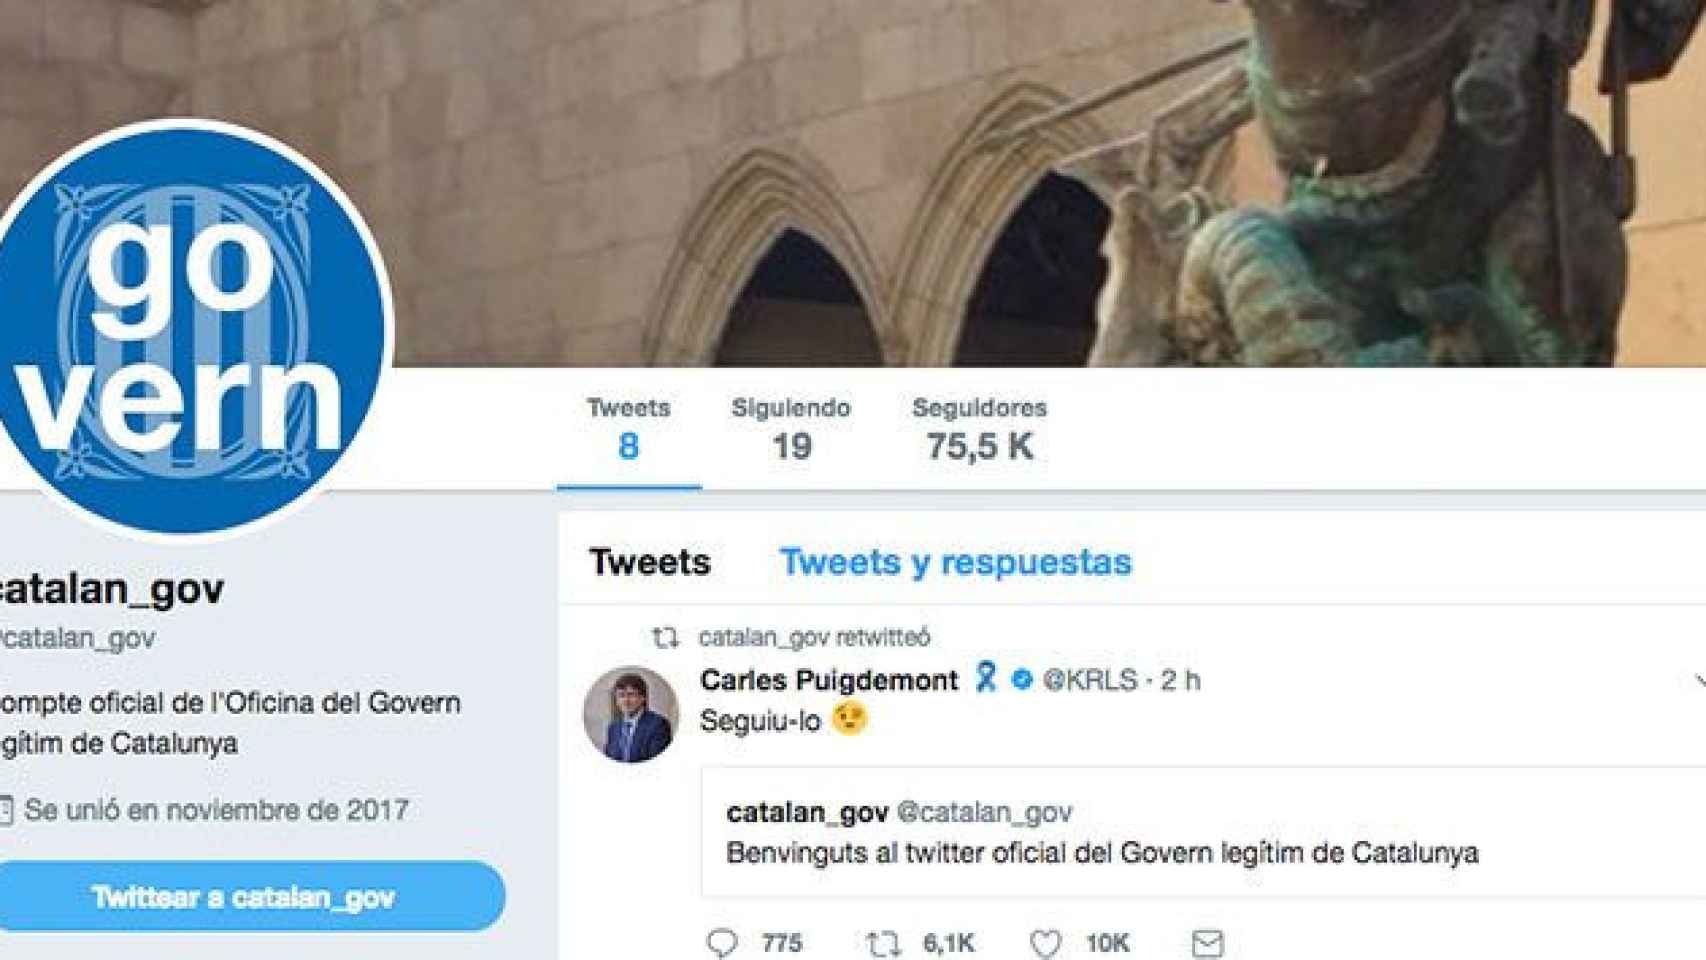 El nuevo perfil de Twitter del Govern cesado / CG